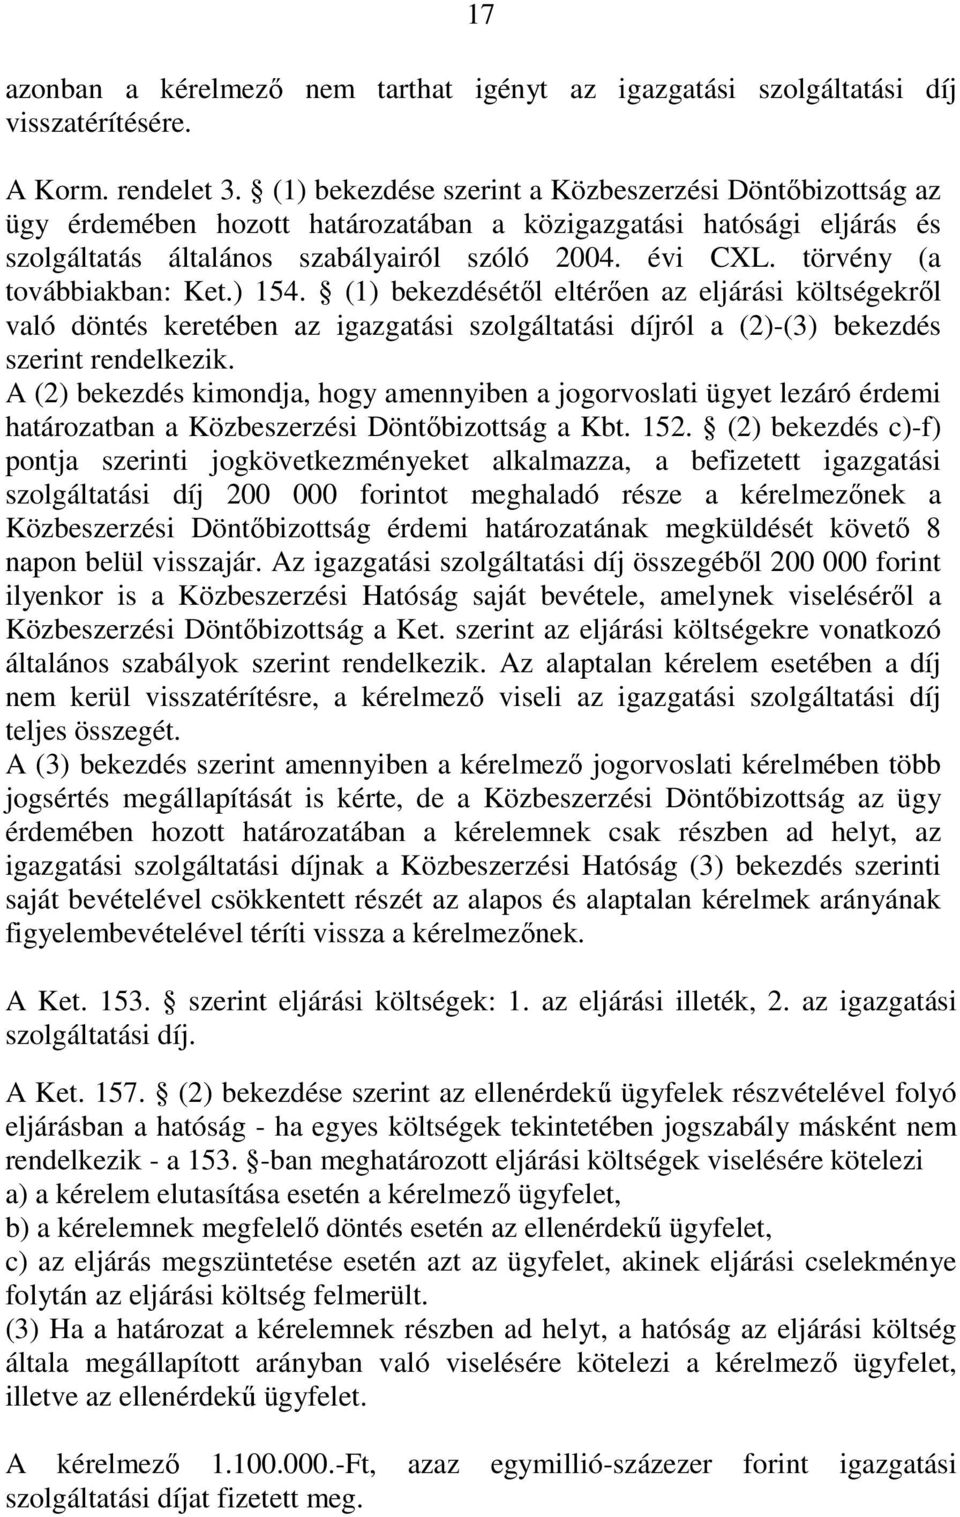 törvény (a továbbiakban: Ket.) 154. (1) bekezdésétıl eltérıen az eljárási költségekrıl való döntés keretében az igazgatási szolgáltatási díjról a (2)-(3) bekezdés szerint rendelkezik.